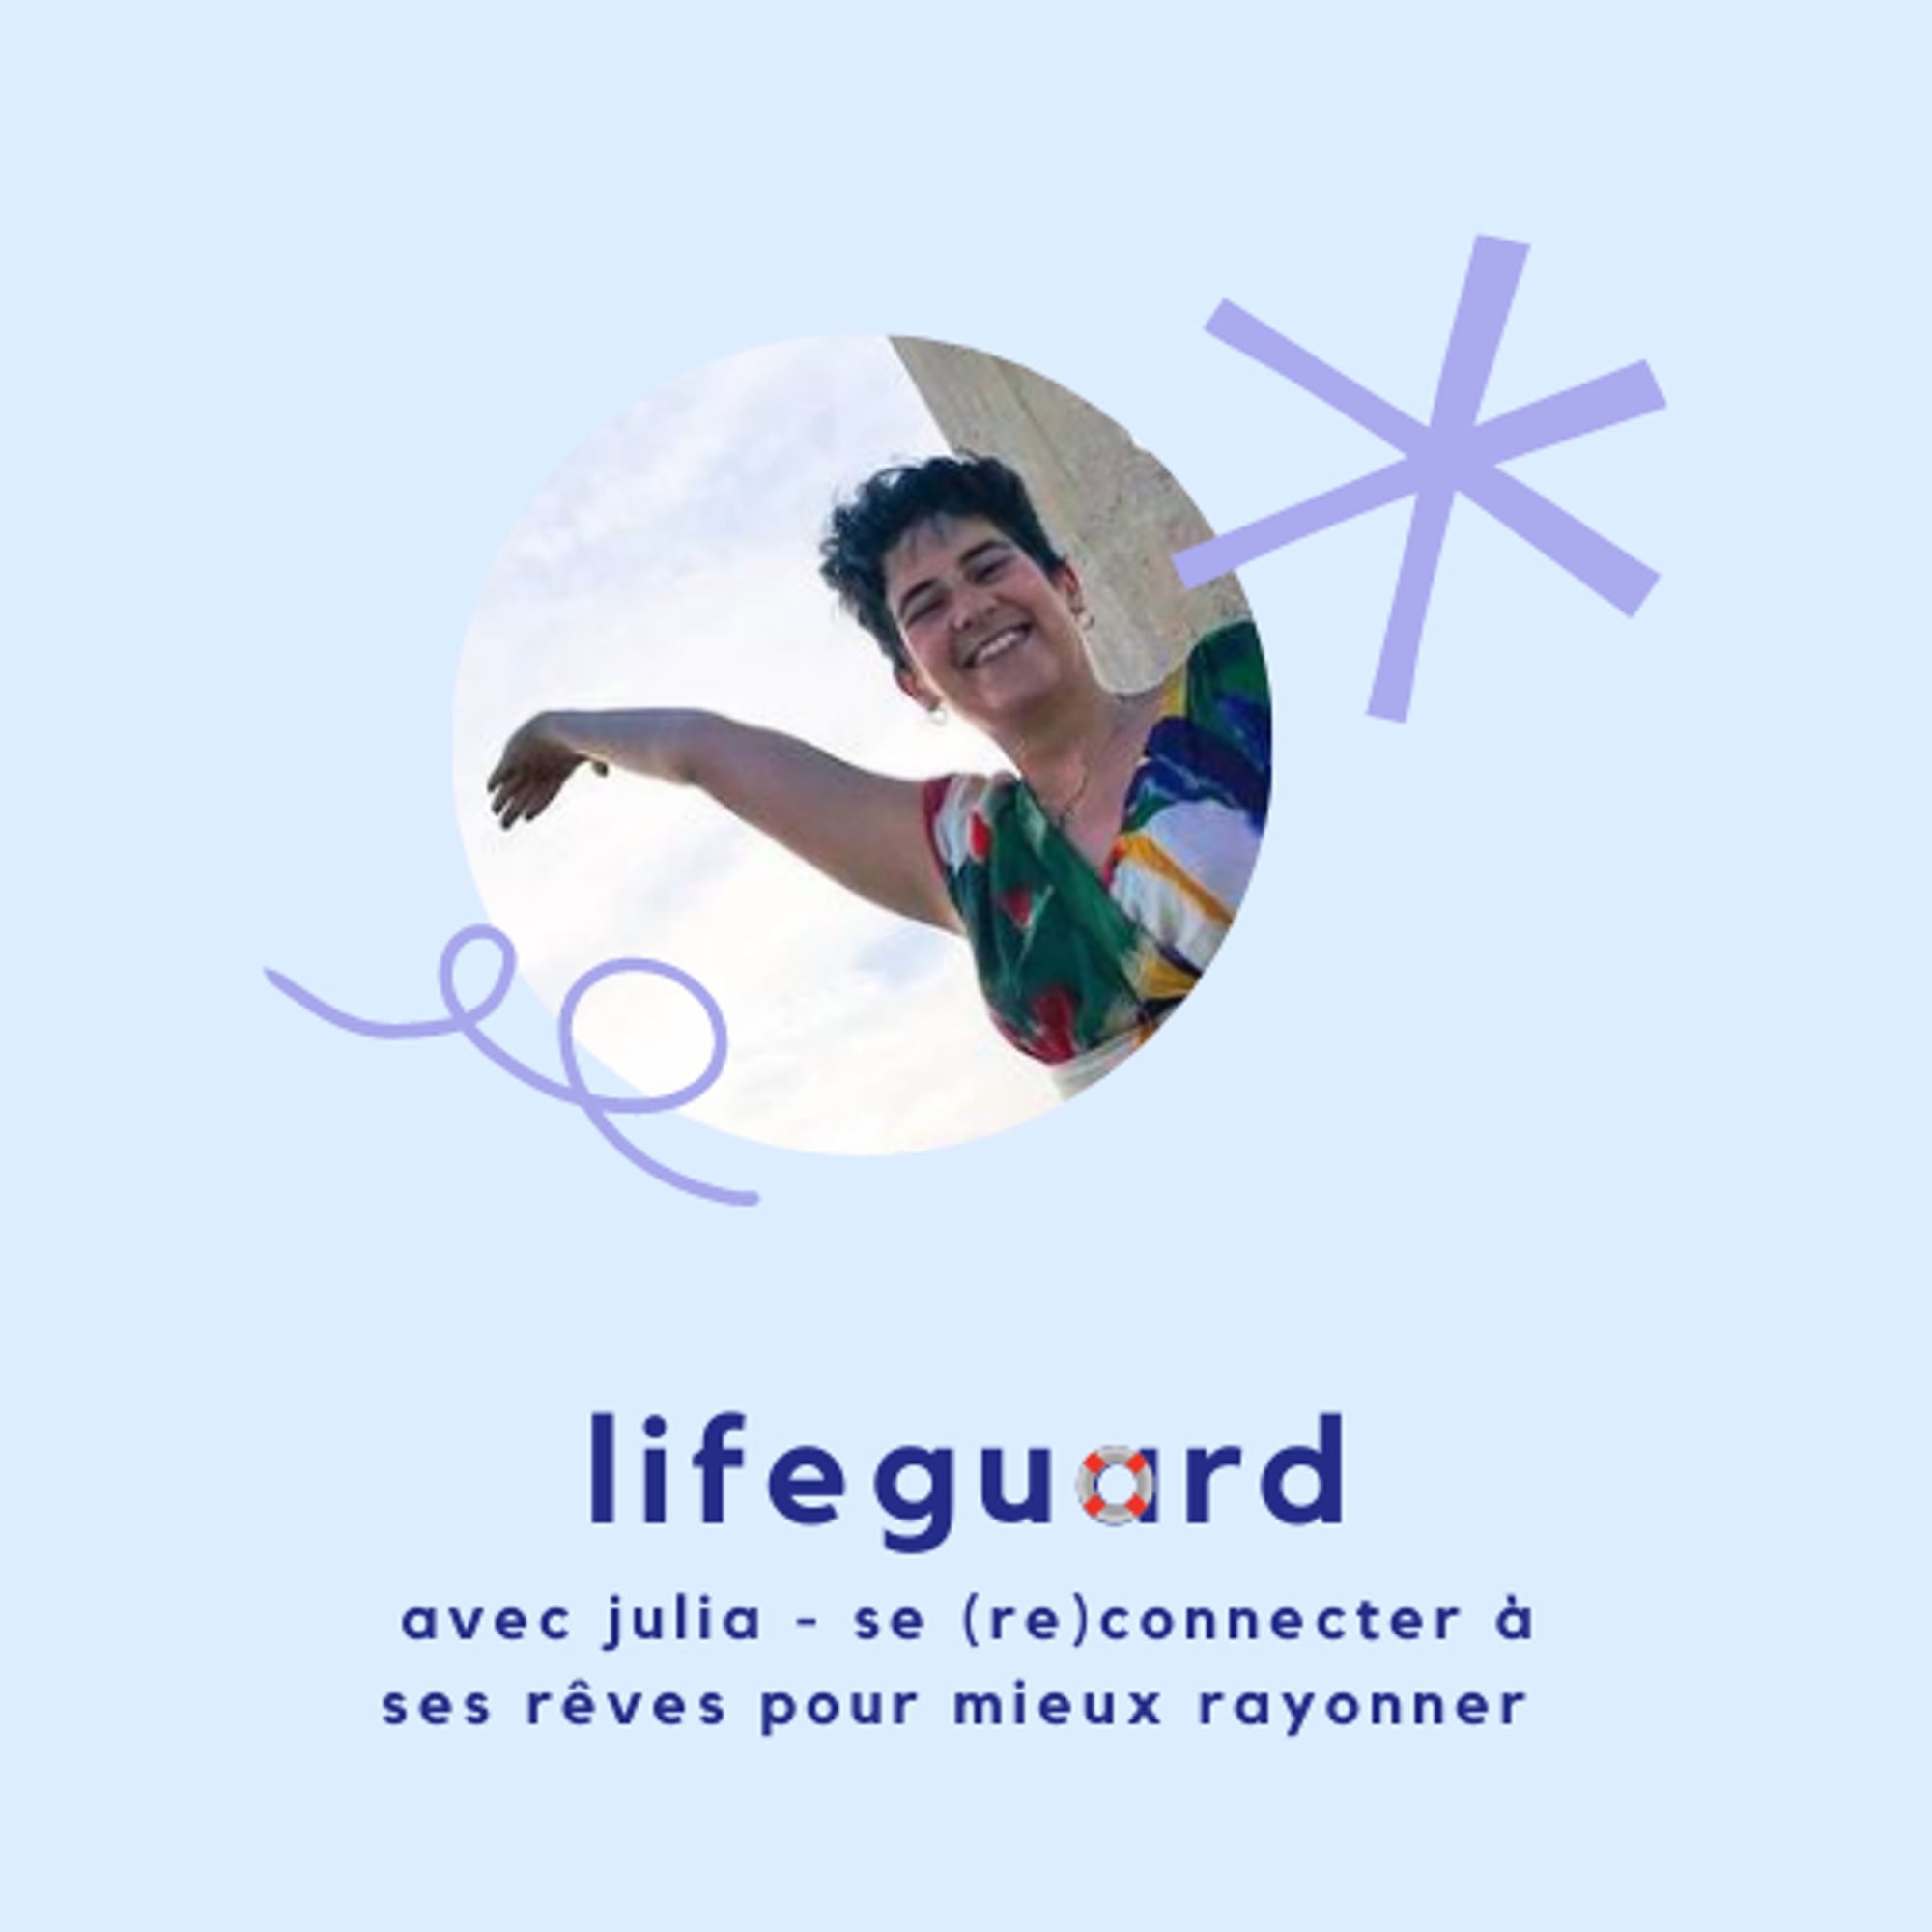 Lifeguard 9 - Julia, se reconnecter à ses rêves pour mieux rayonner.png